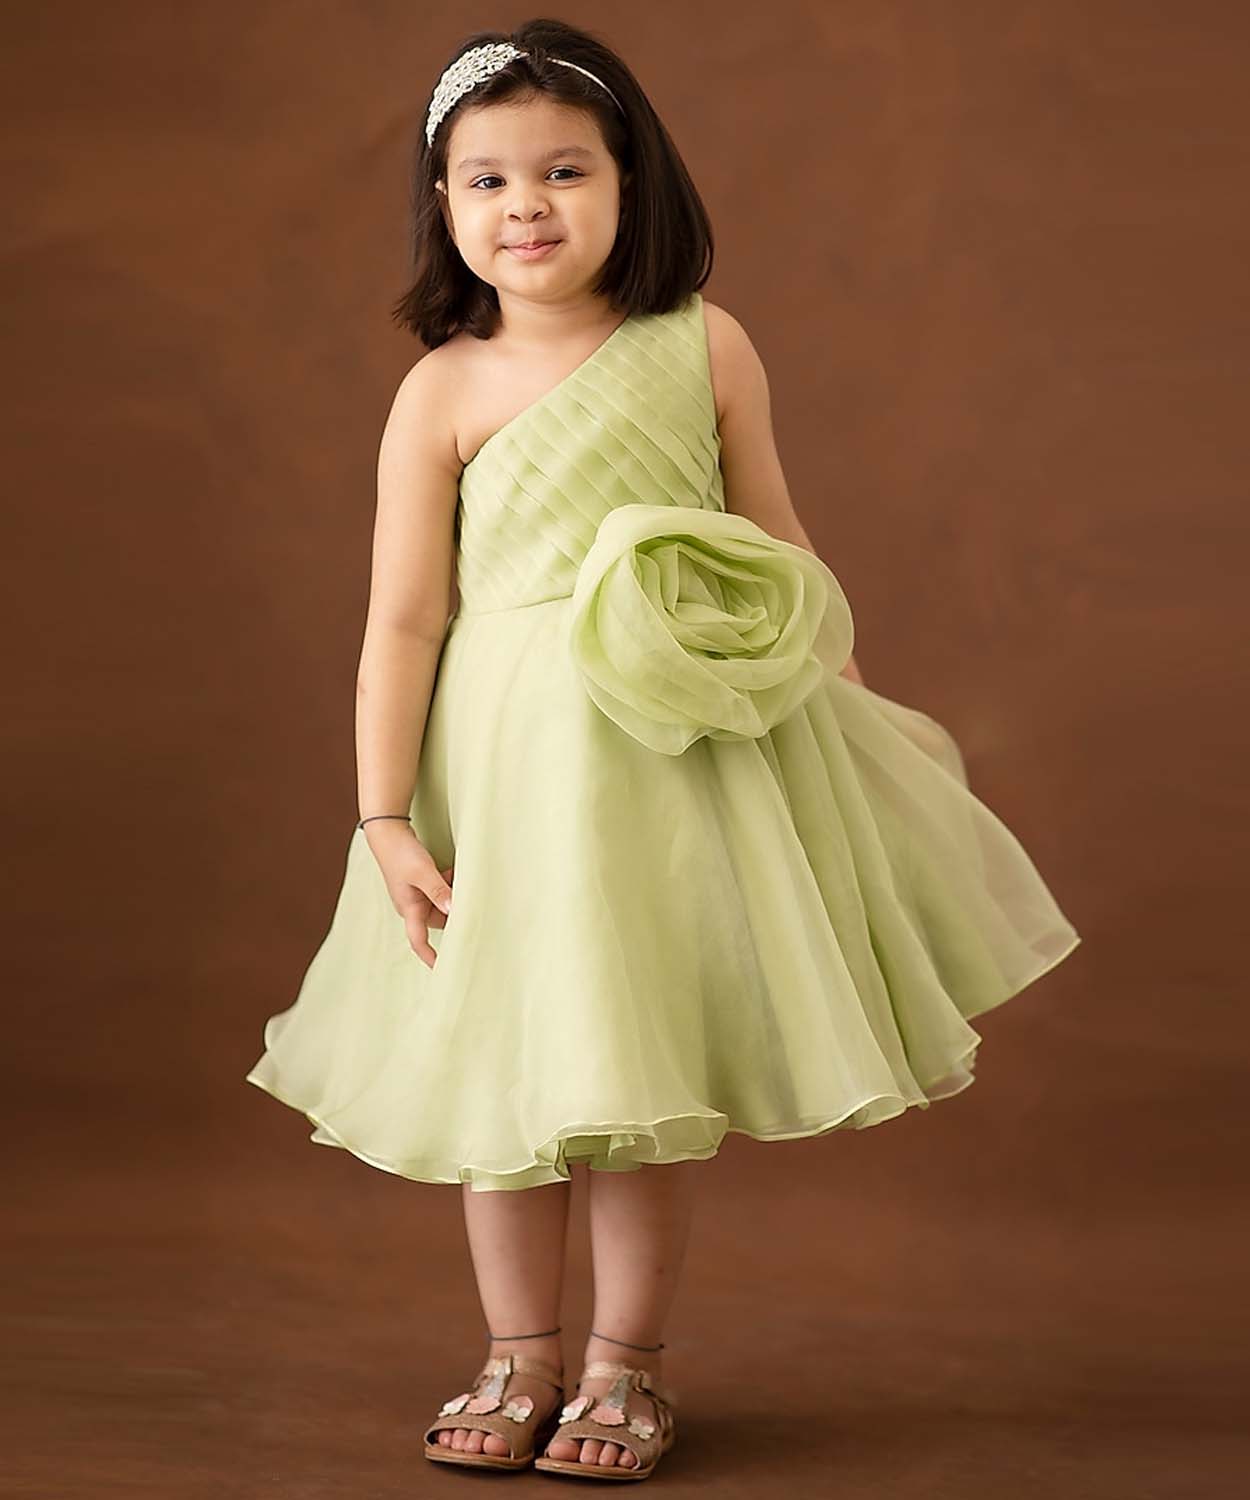 Tinker Bell Dress